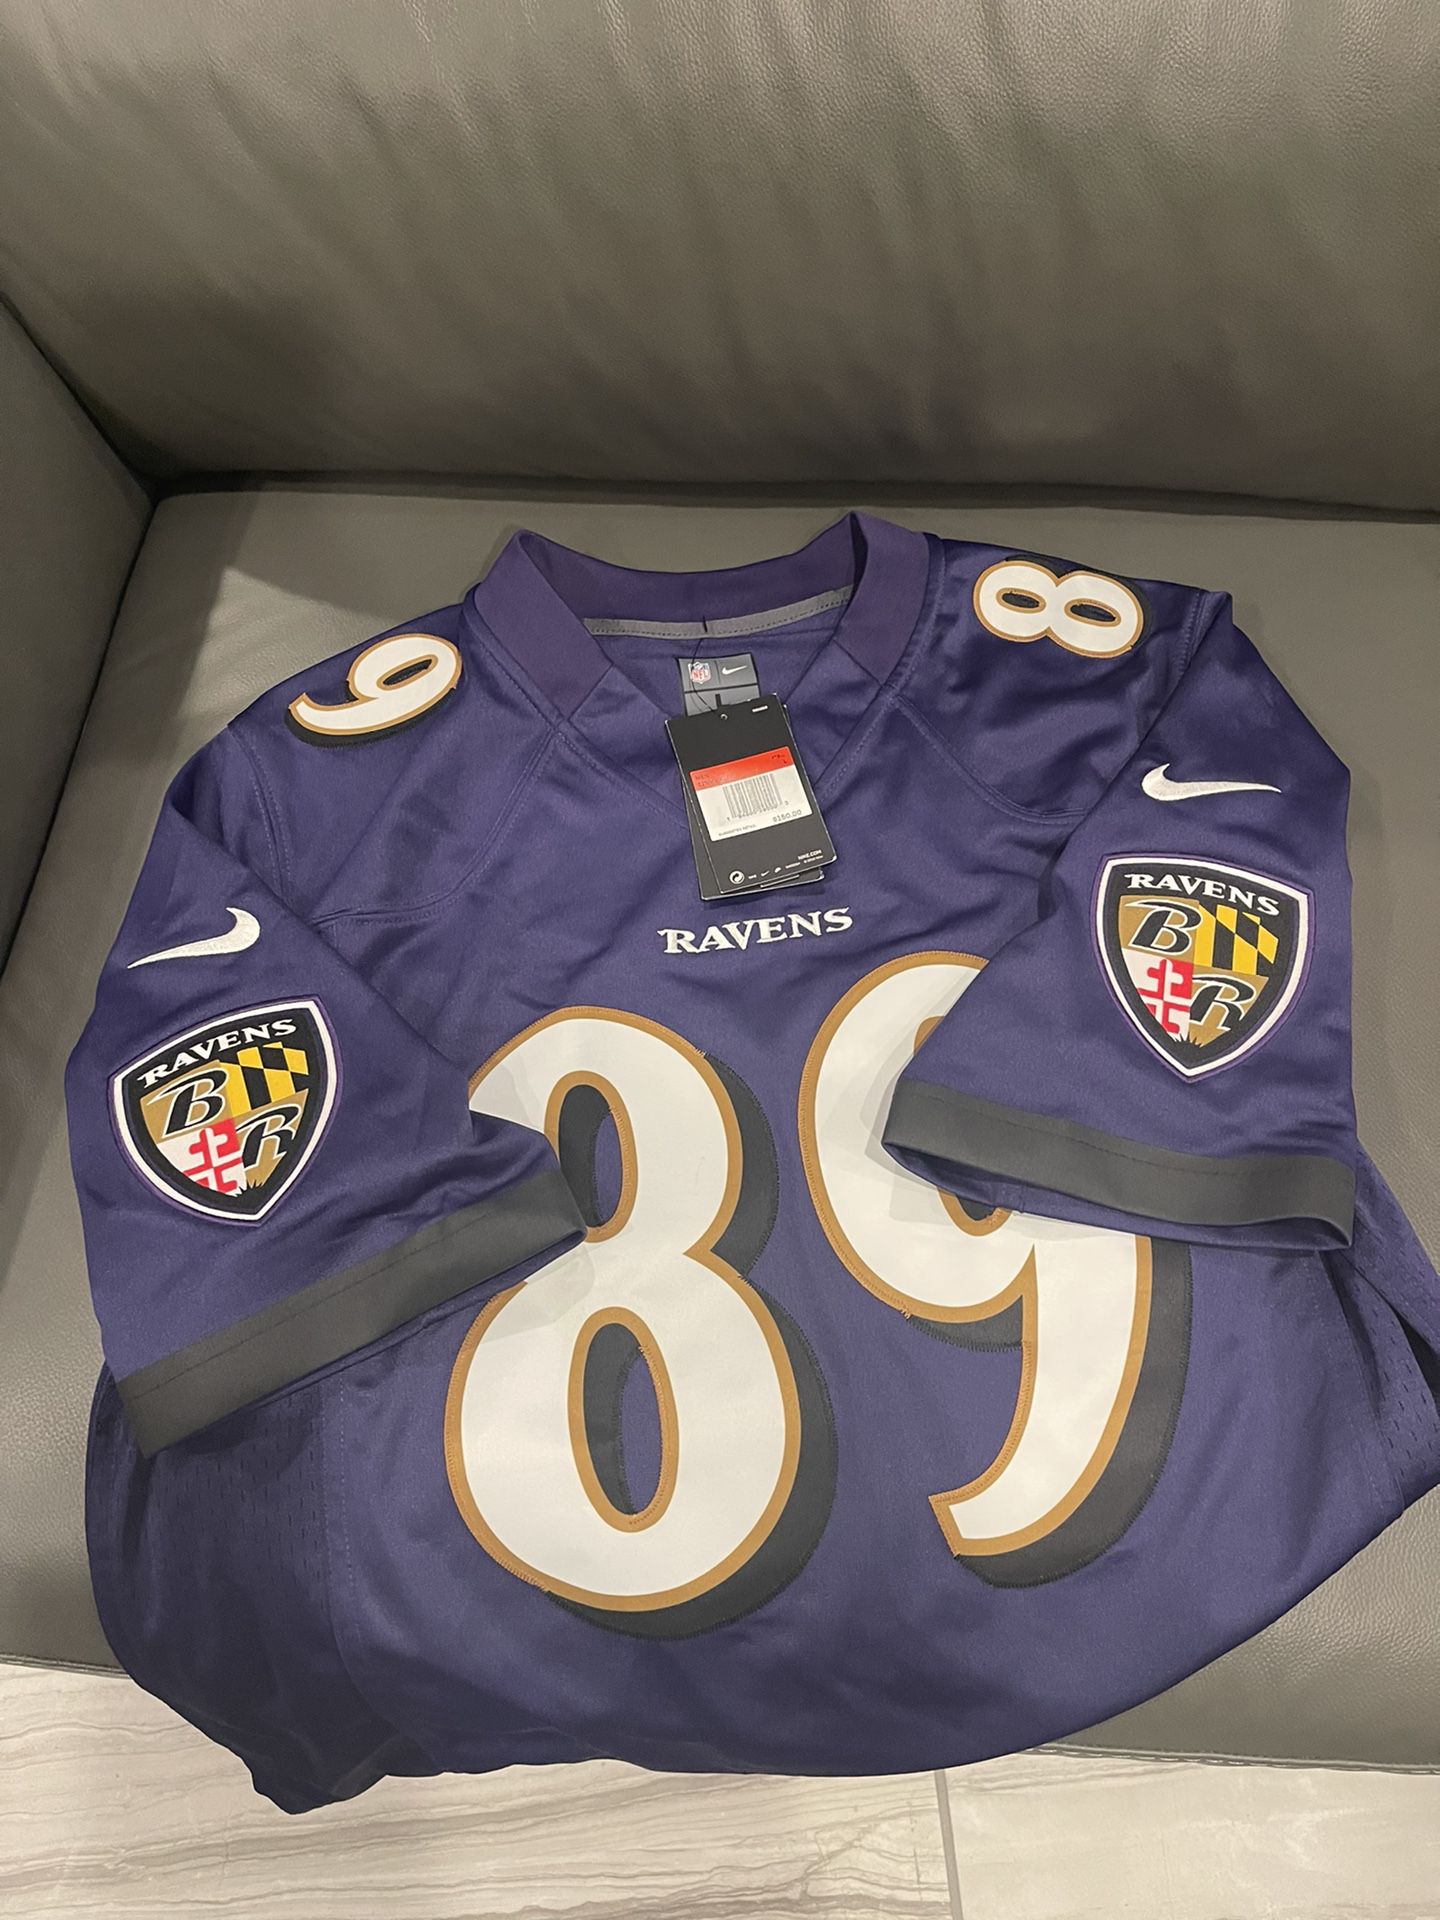 Brand New NFL Ravens Jersey - $75 - Size L 